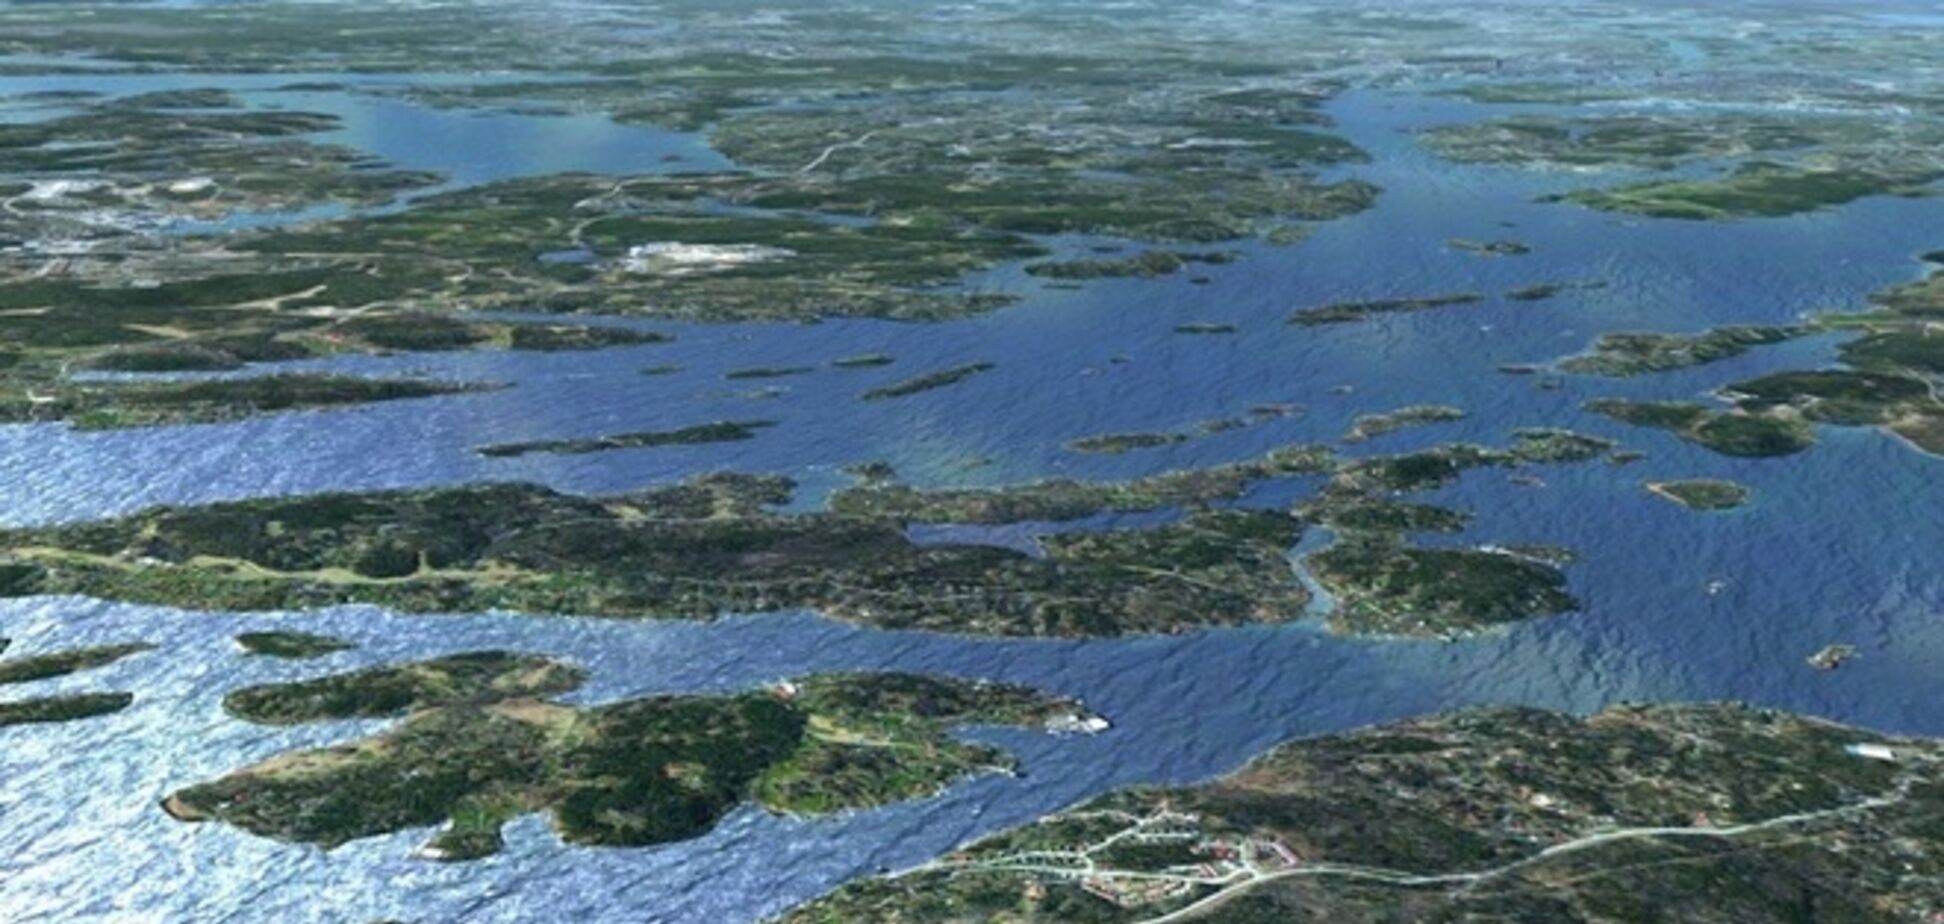 Нефтяной танкер потерпел крушение у берегов Швеции